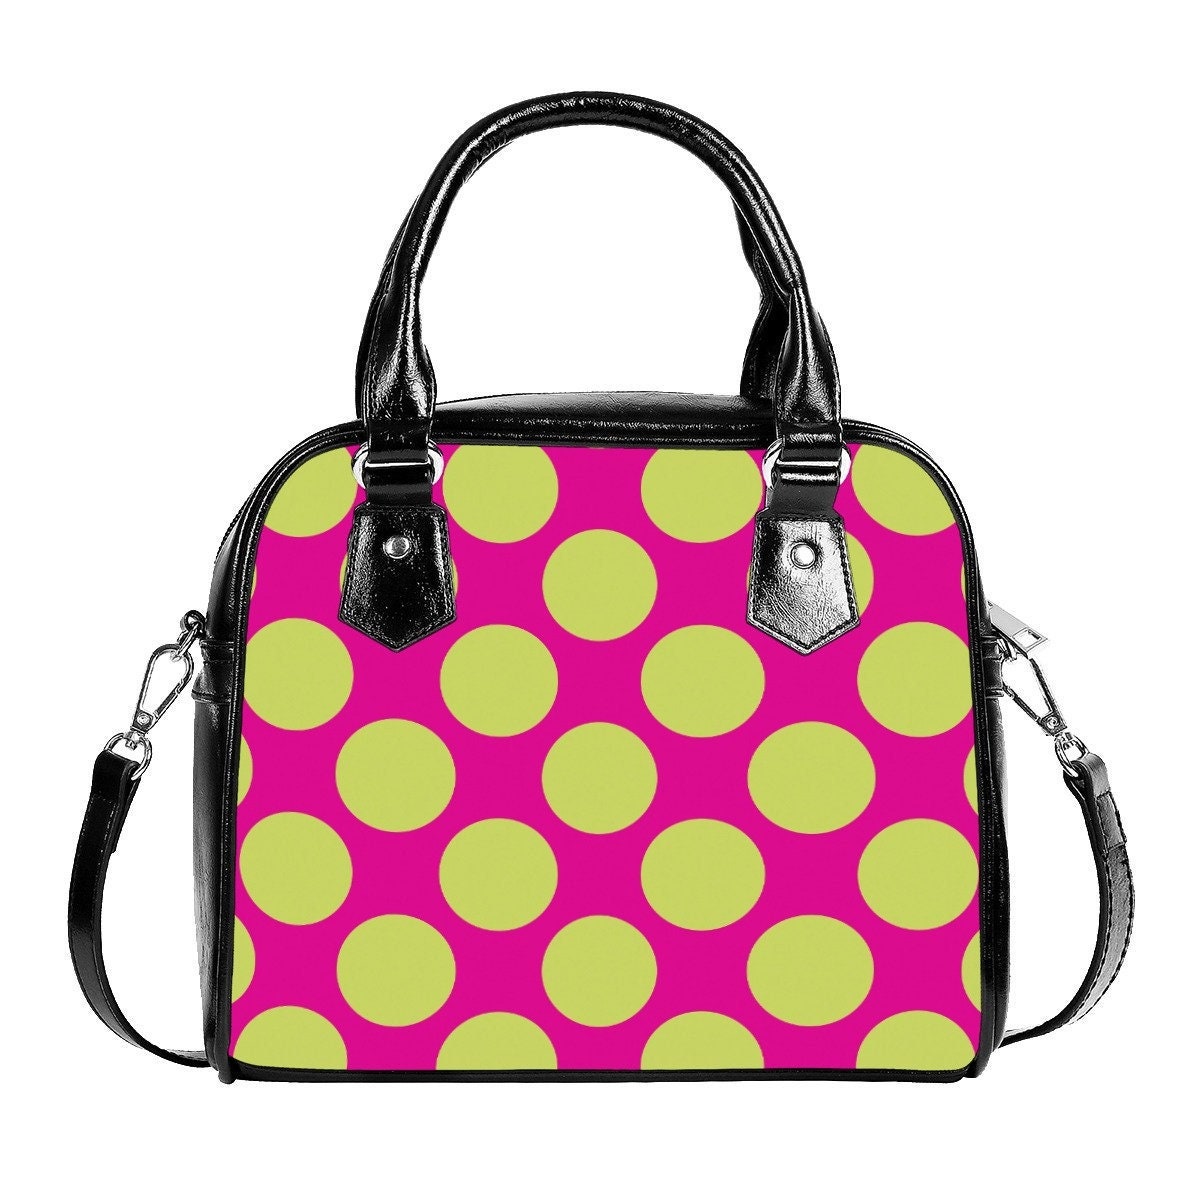 Polka Dot Handtasche, Pink Grün Polka Dot Handtasche, Retro Handtaschen, Retro Handtaschen für Frauen, Polka Dot Handtasche, Vintage Style Handtasche, Damentaschen